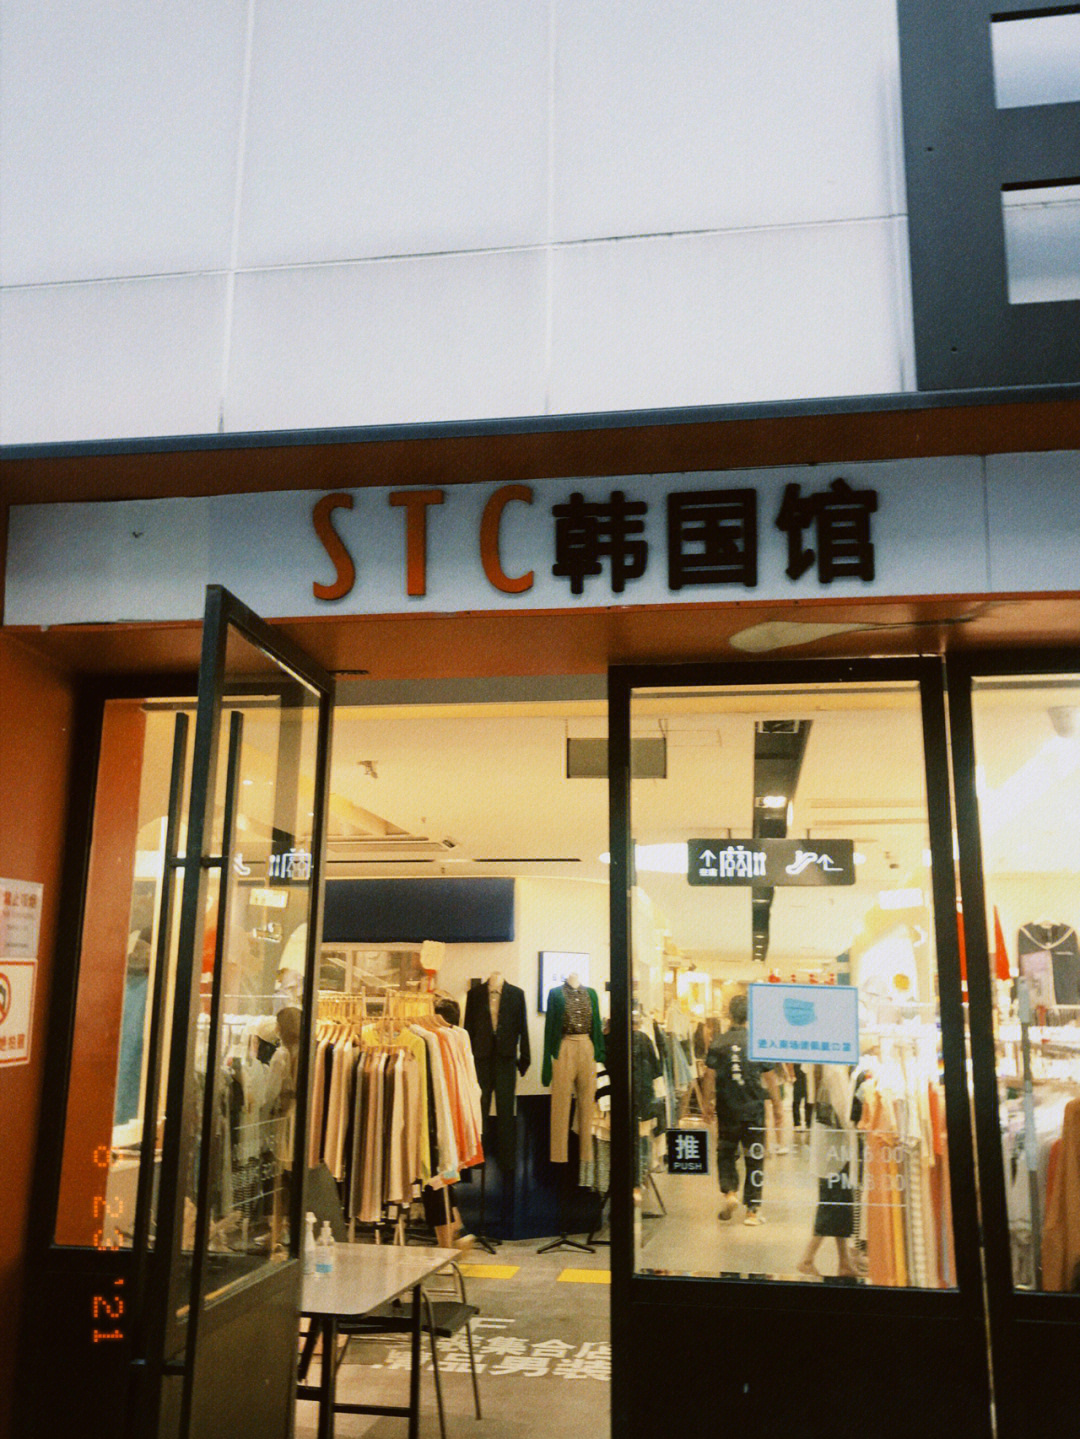 上海服装批发市场淘了8件衣服期待上身效果感觉越来越喜欢线下买衣服